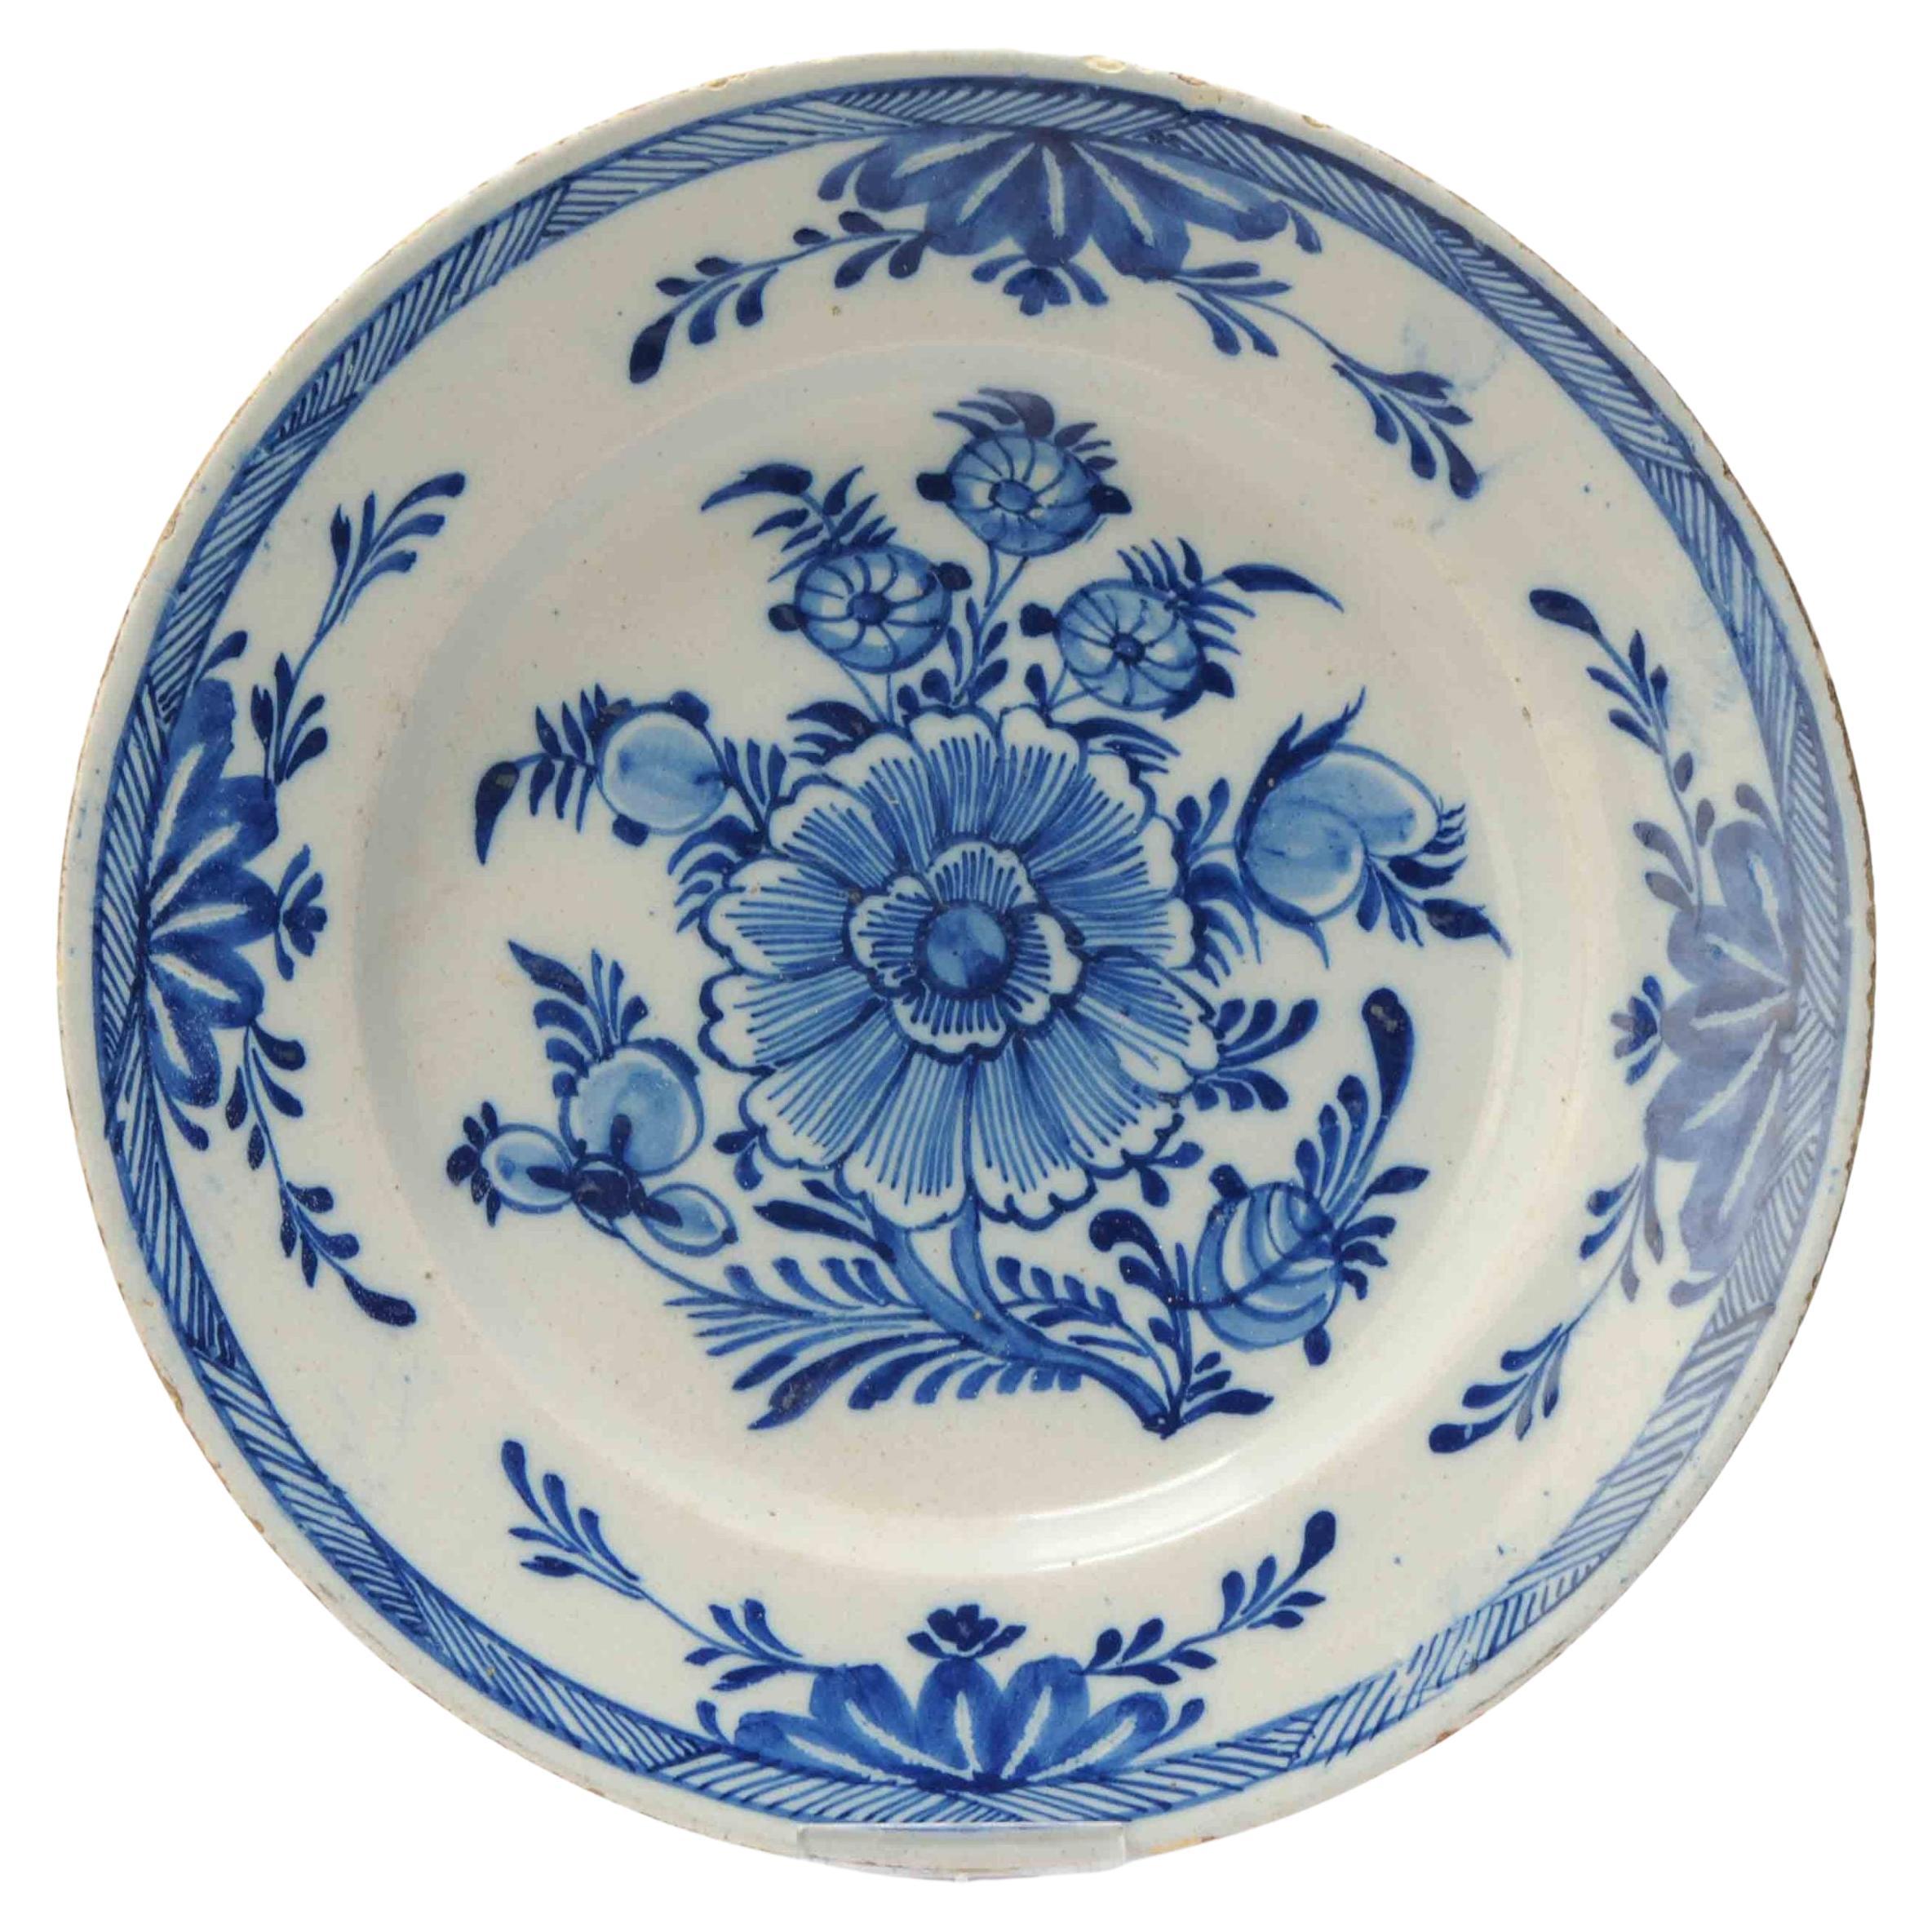 Assiette ancienne en faïence de Delft assiette bleue et blanche Chine, 18ème siècle